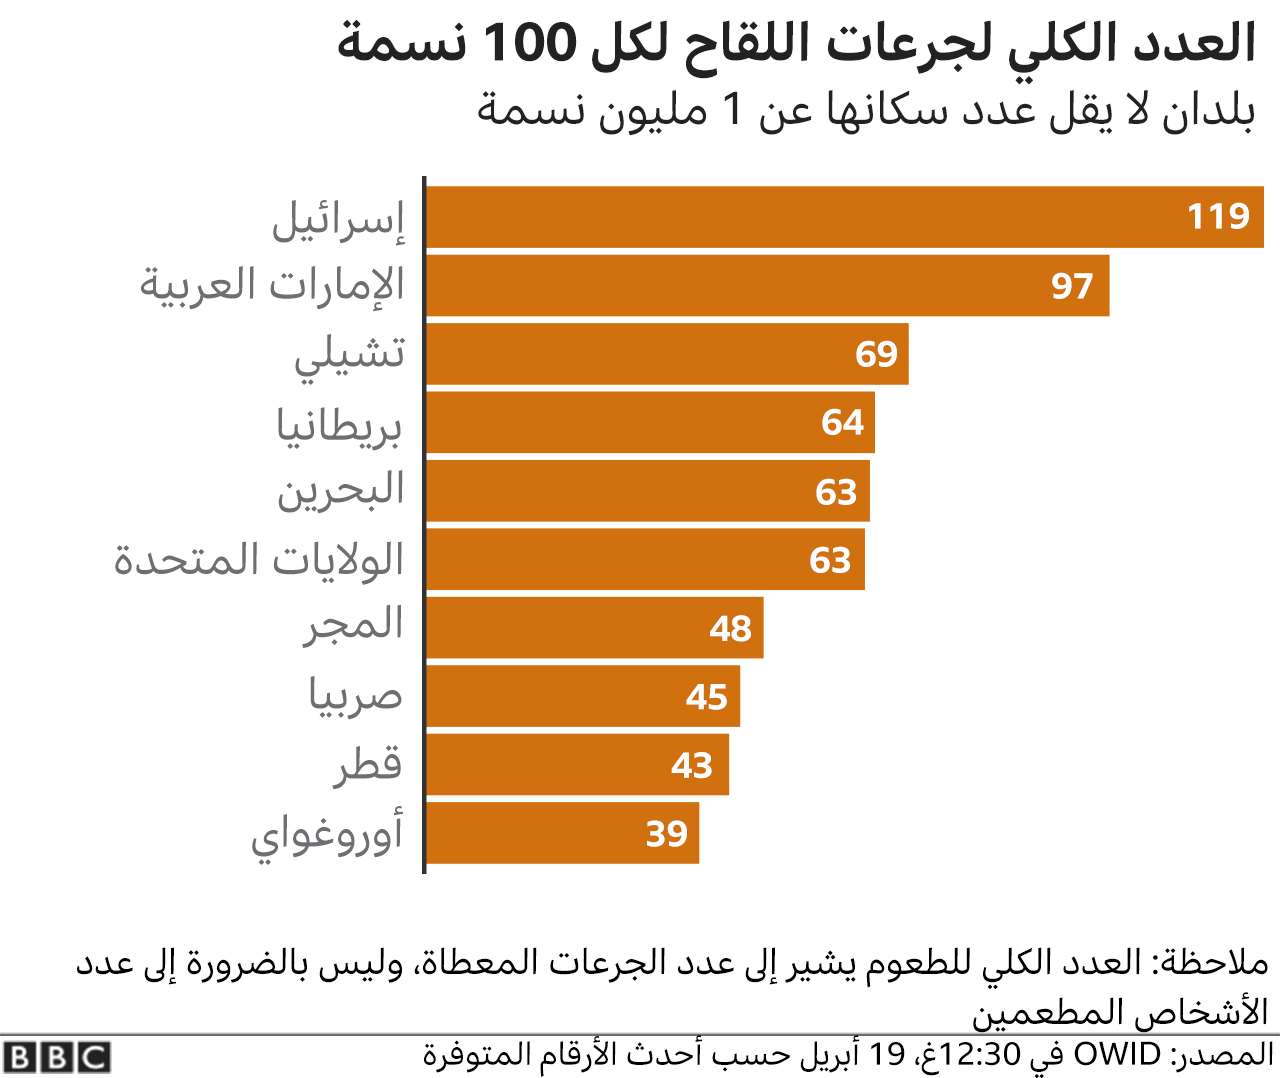 كم عدد المحصنين في السعوديه